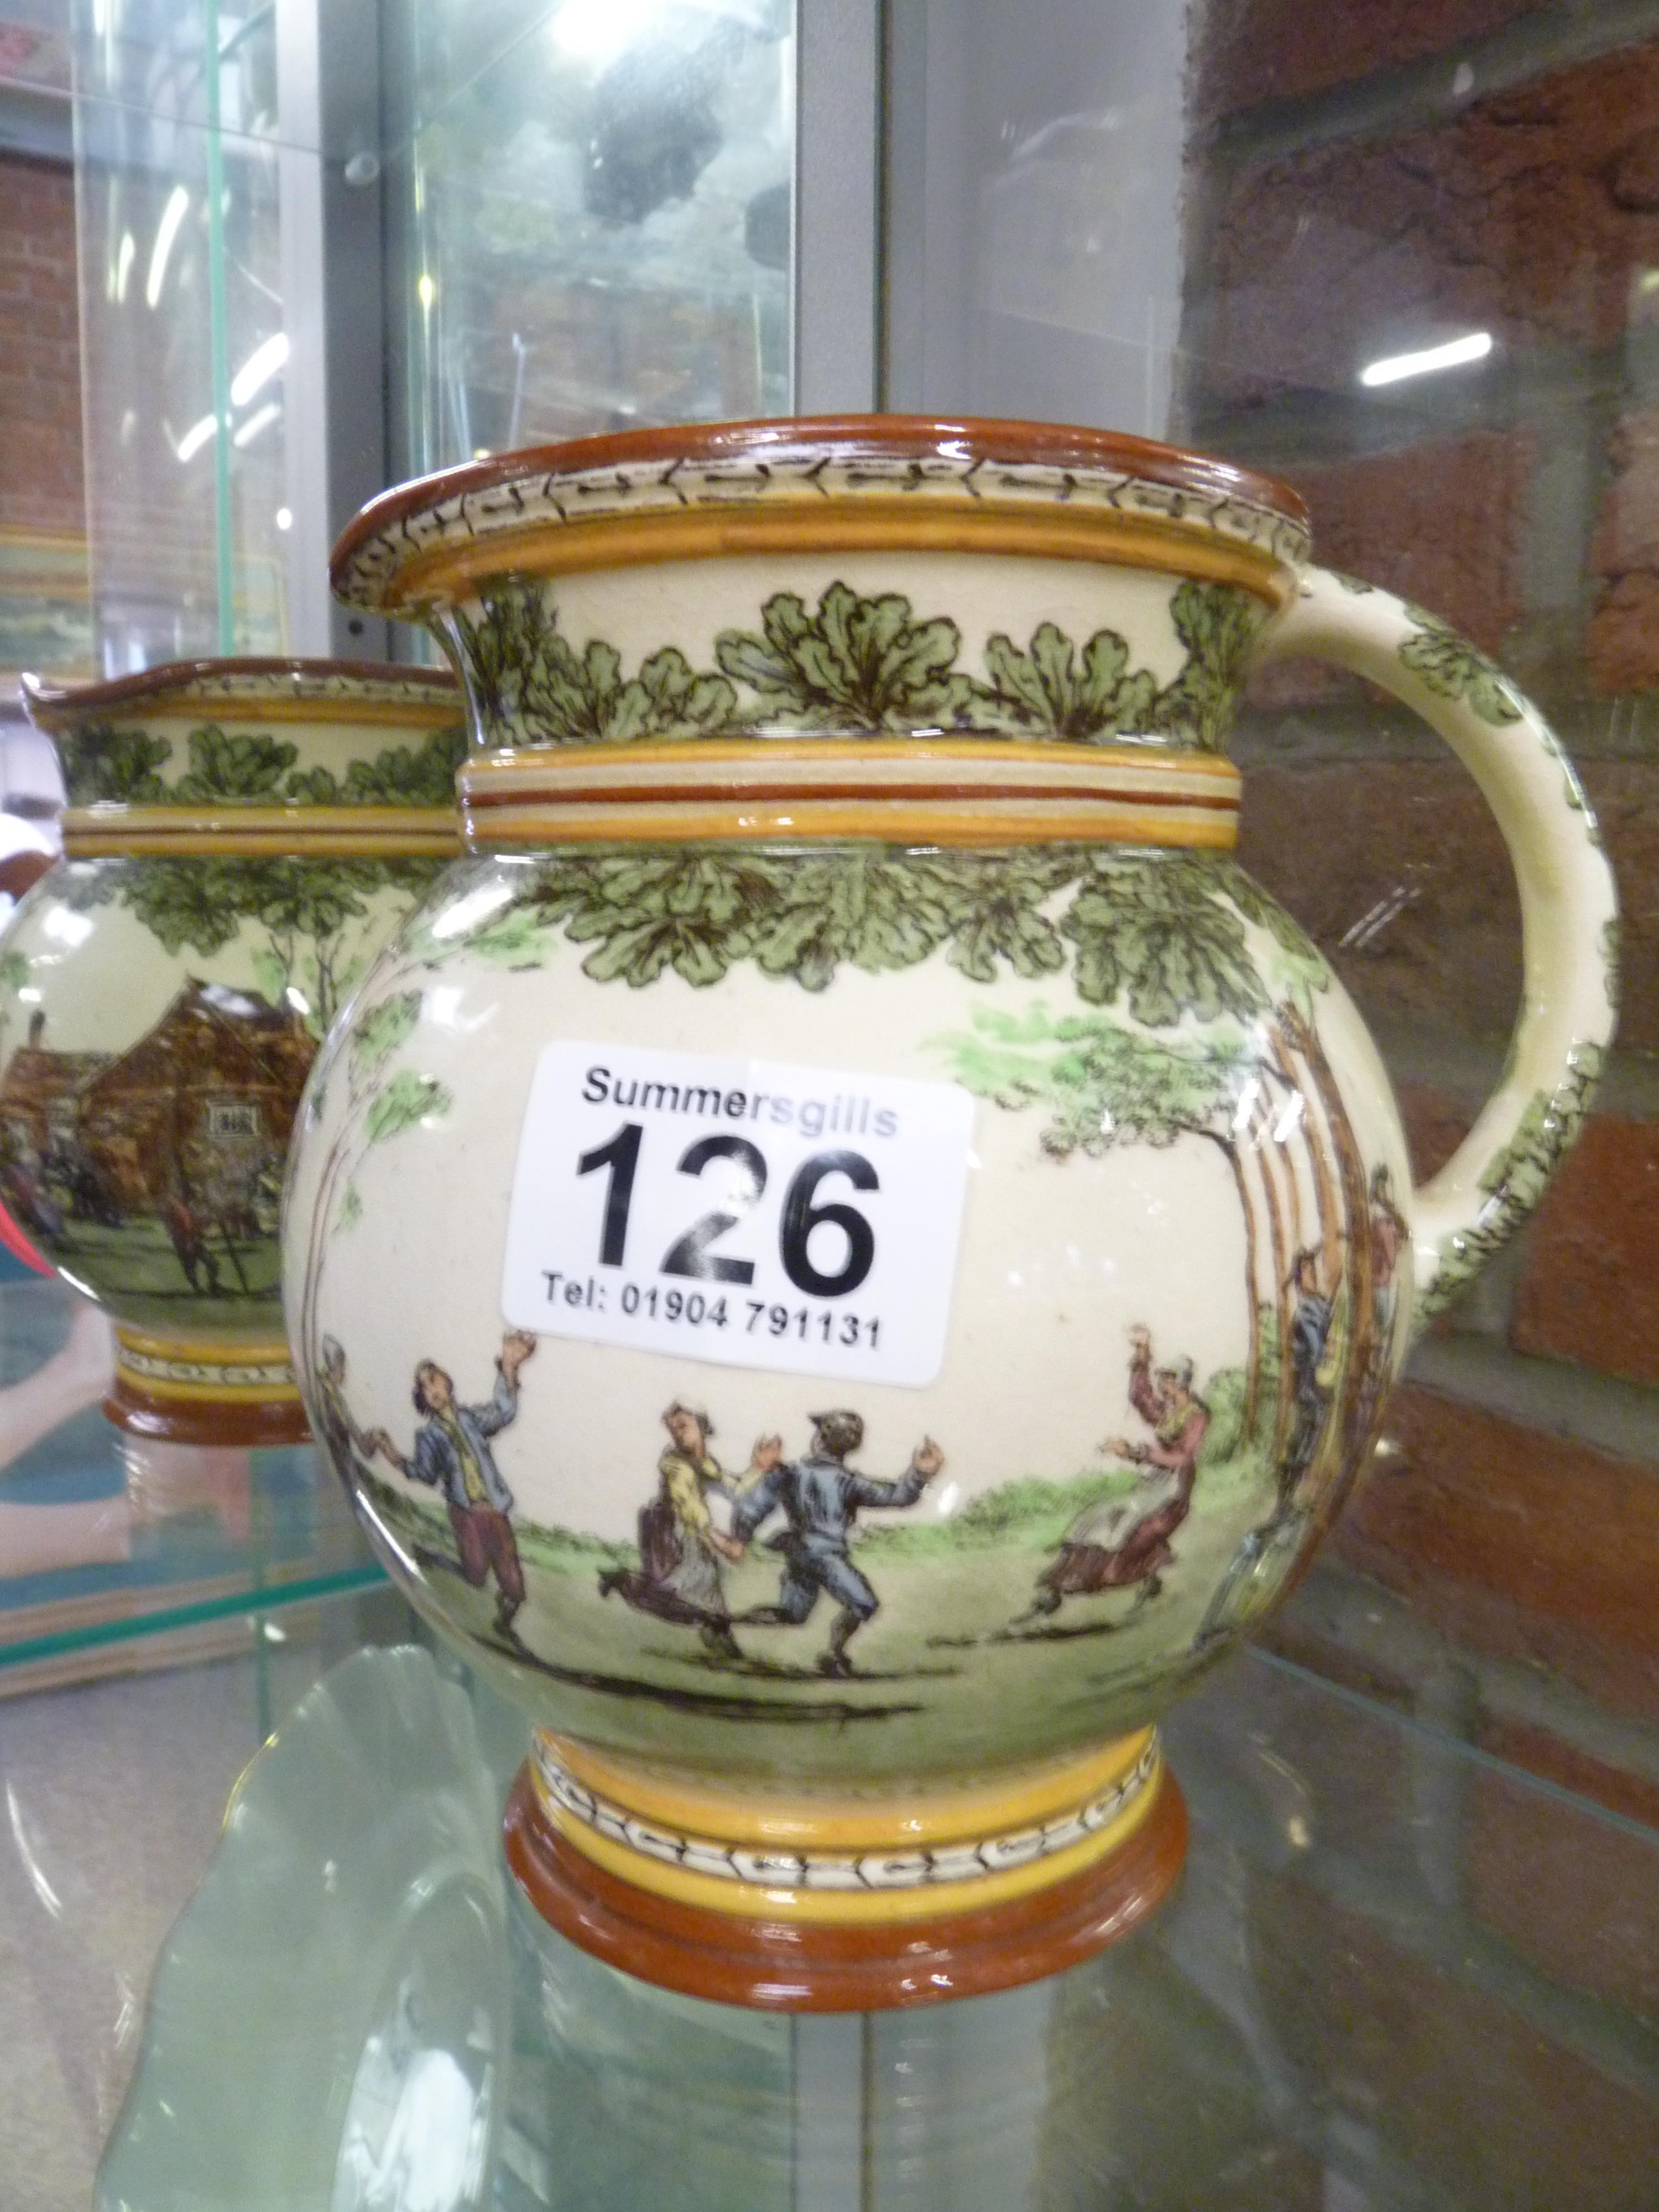 Royal Doulton pitcher jug